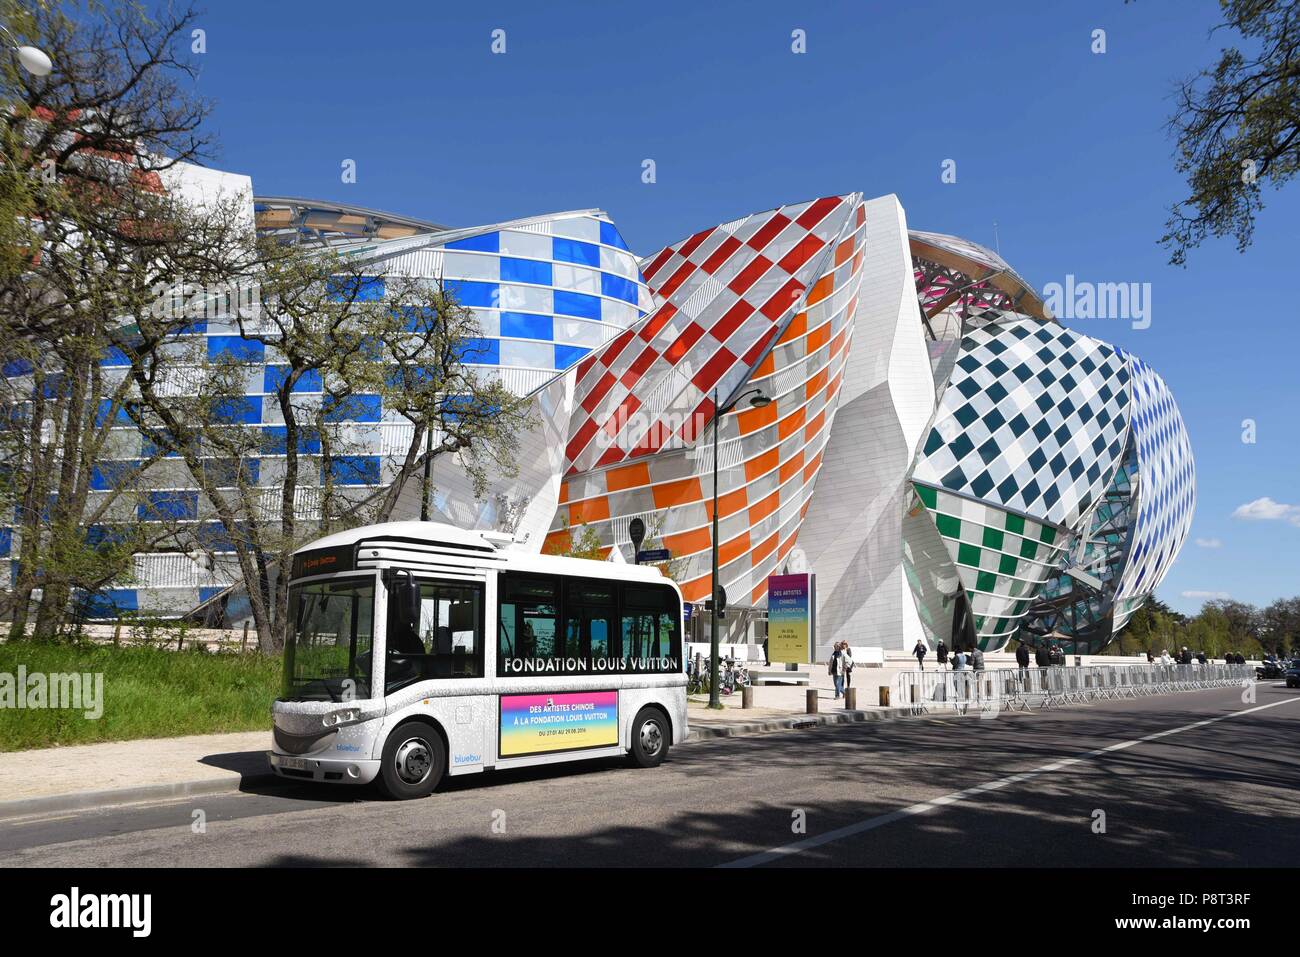 April 18, 2016 - Paris, France: View of the Fondation Louis Vuitton after  the building has been decorated with colored panels designed by French  artist Daniel Buren. Vue de la Fondation Louis